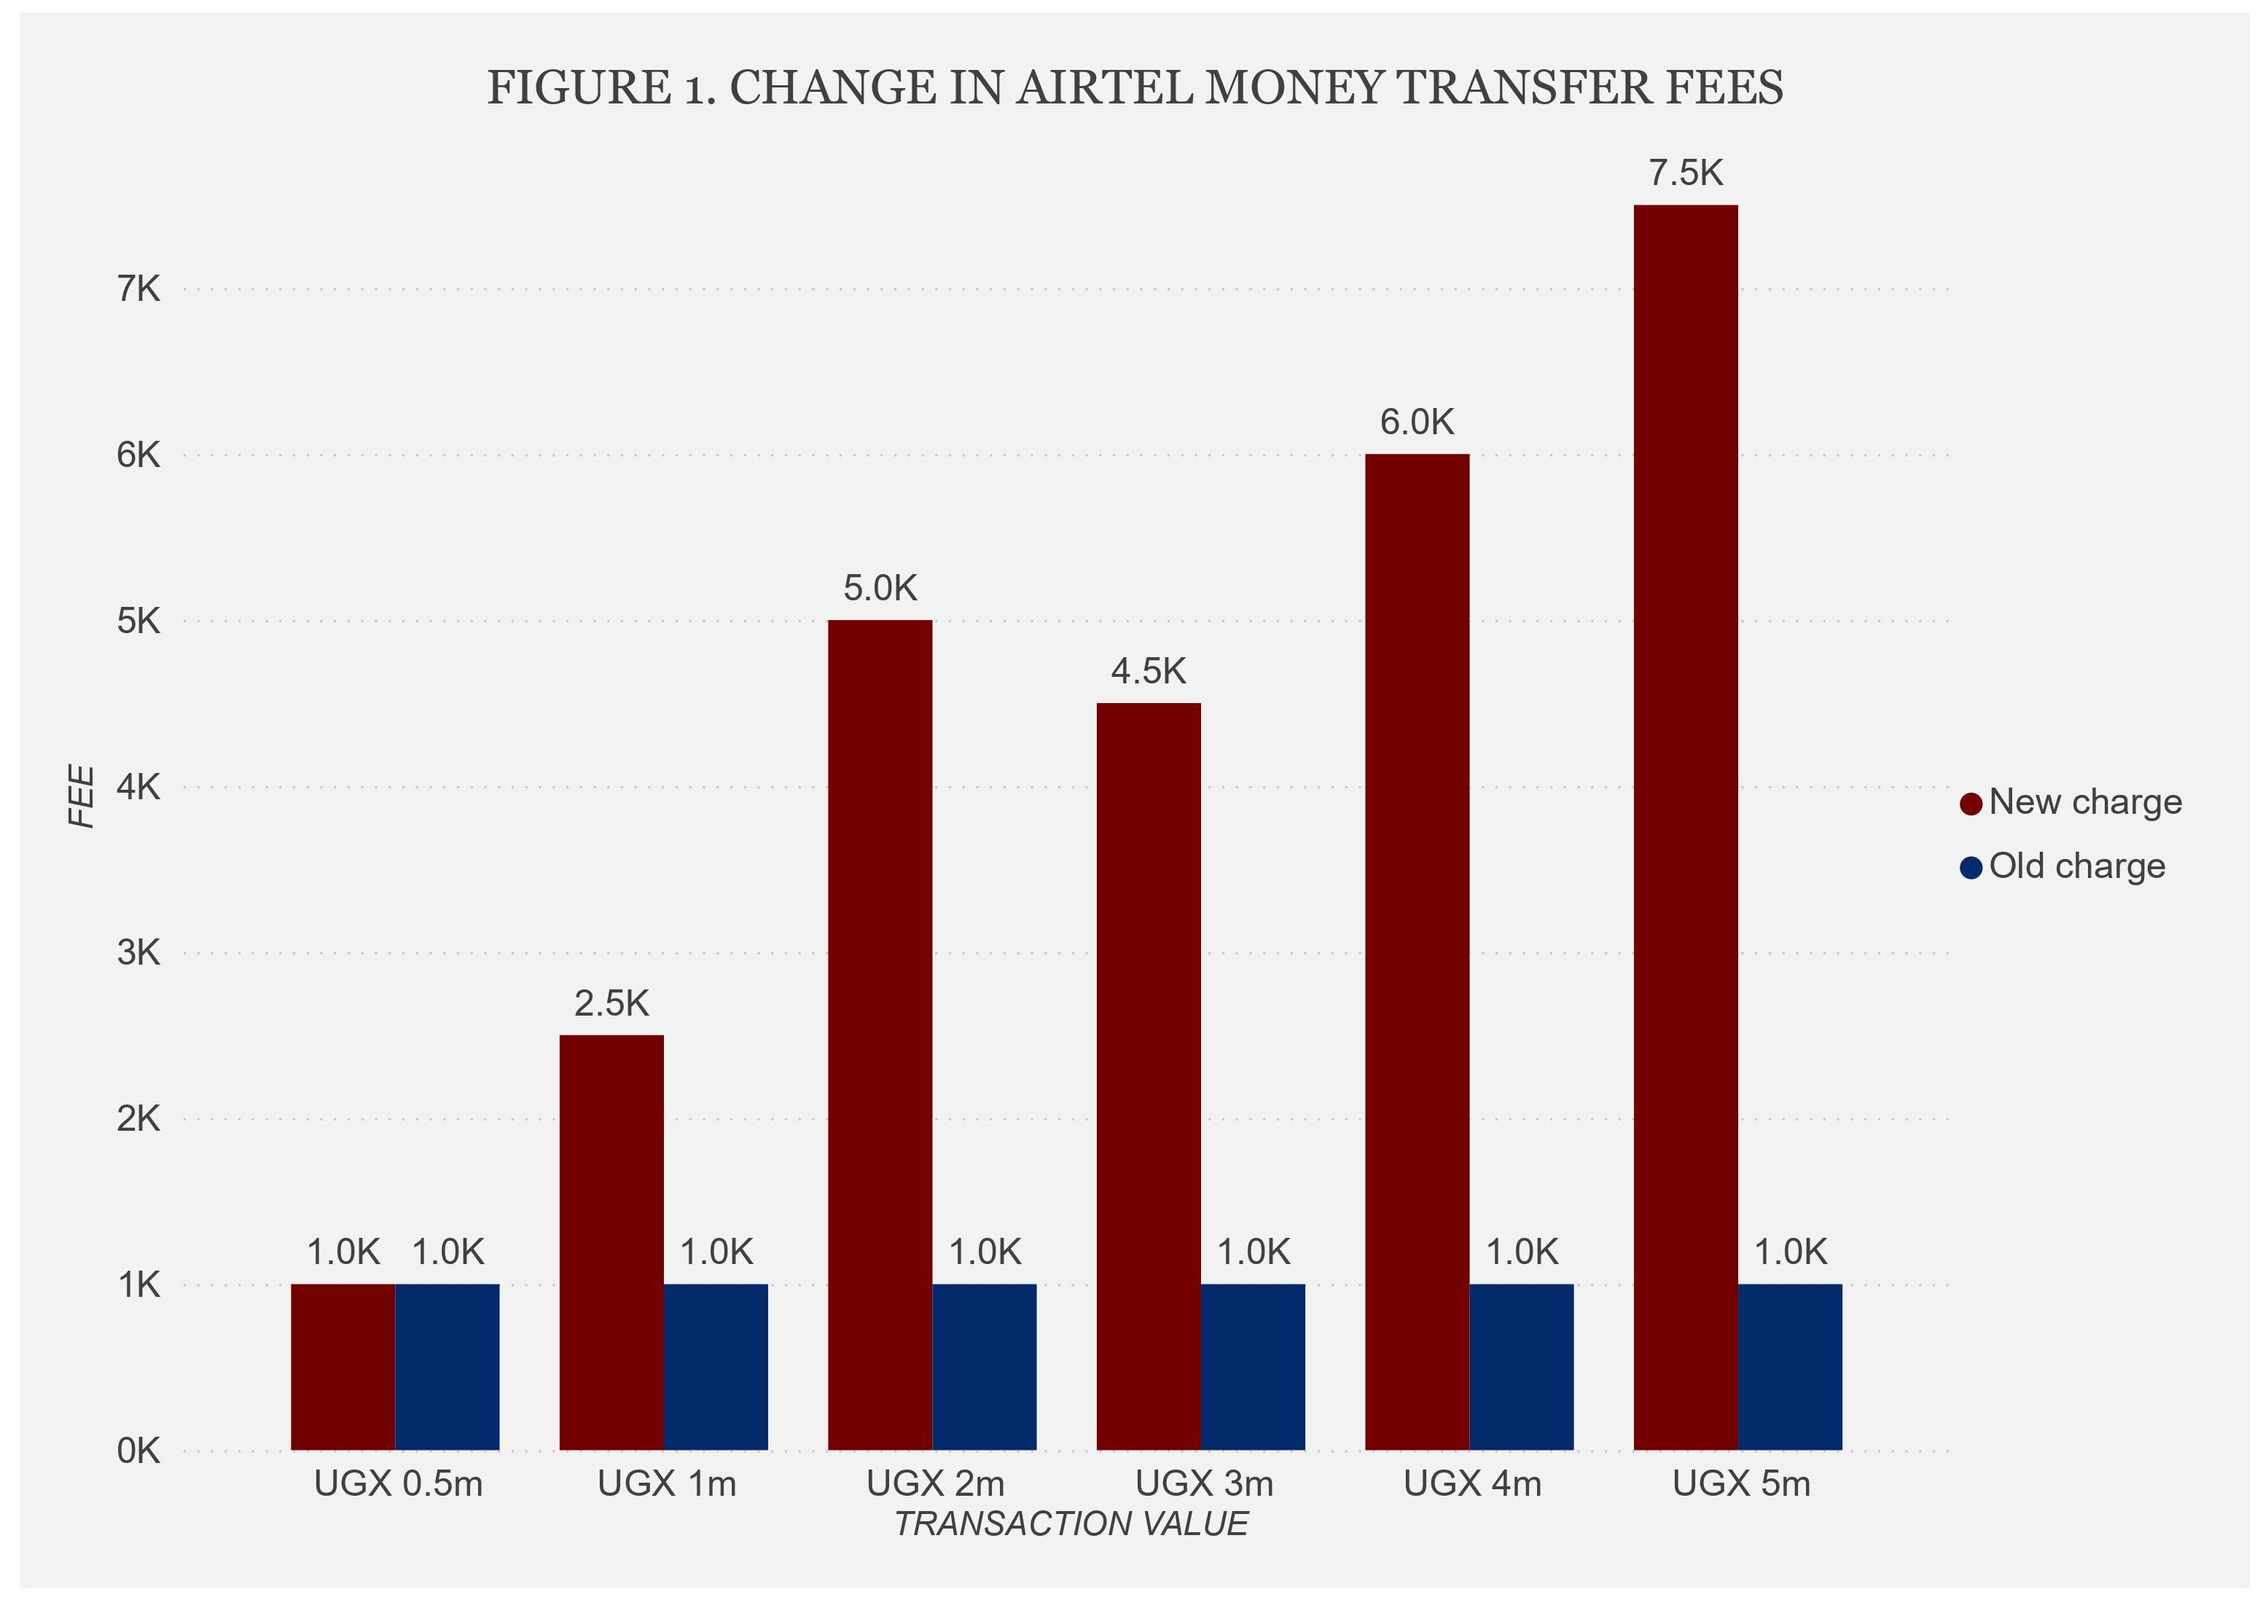 Figure 1: Change in Airtel money transfer fee